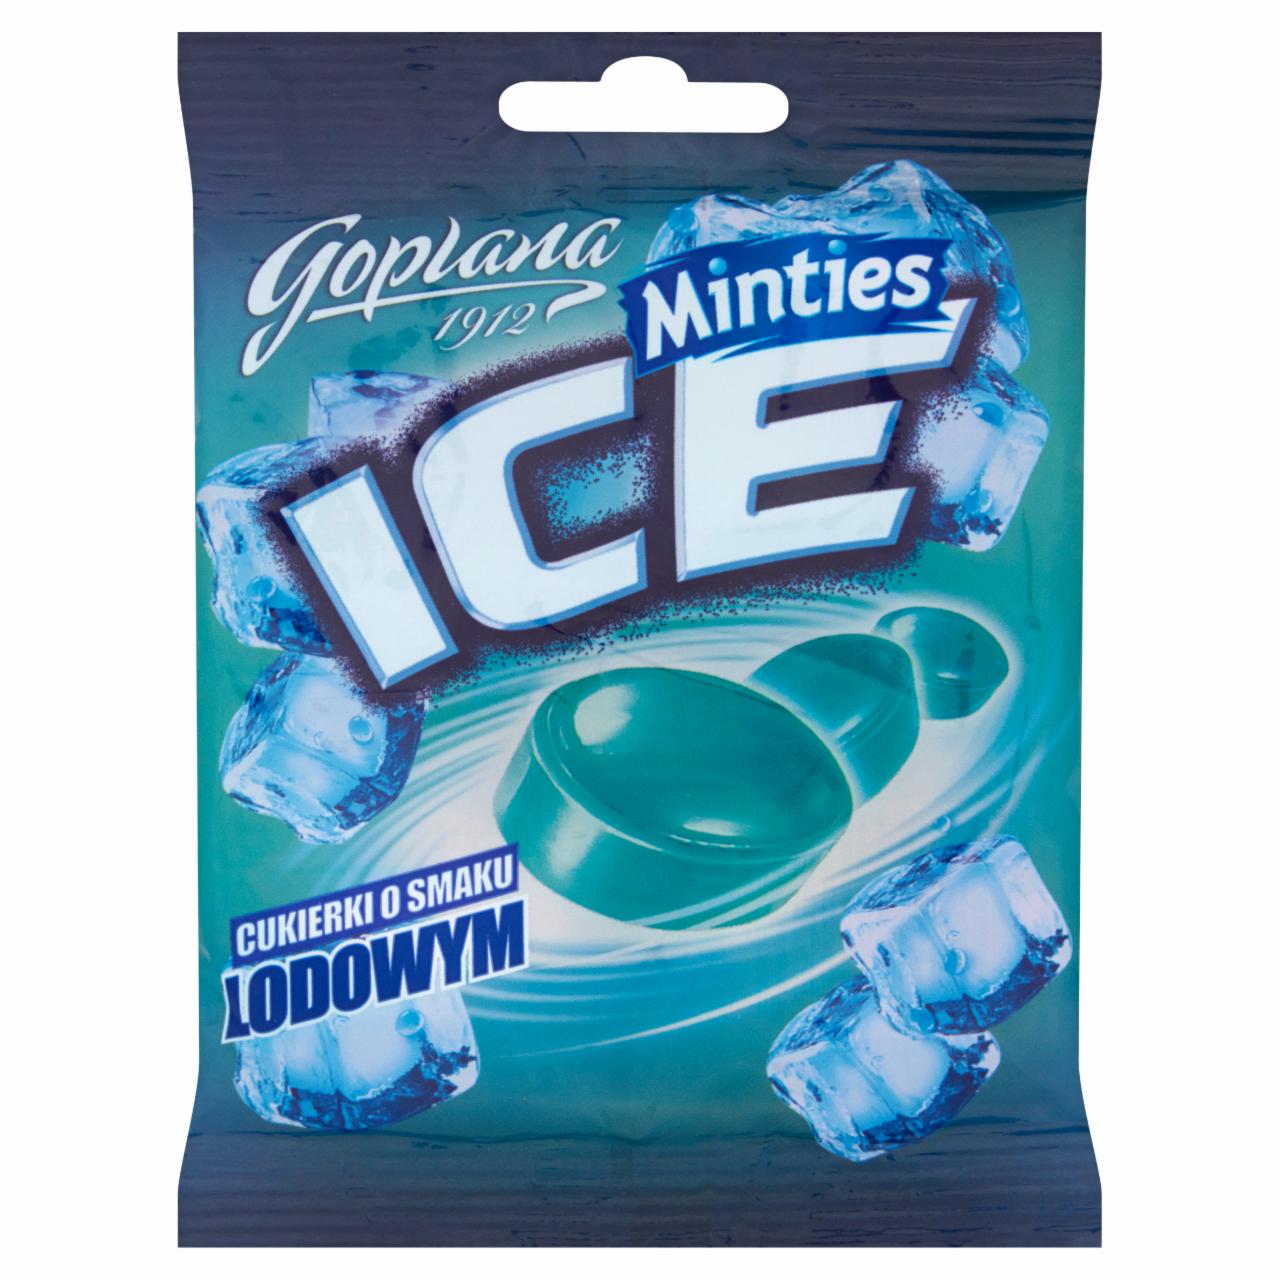 Zdjęcia - Goplana Minties Ice Cukierki o smaku lodowym 90 g